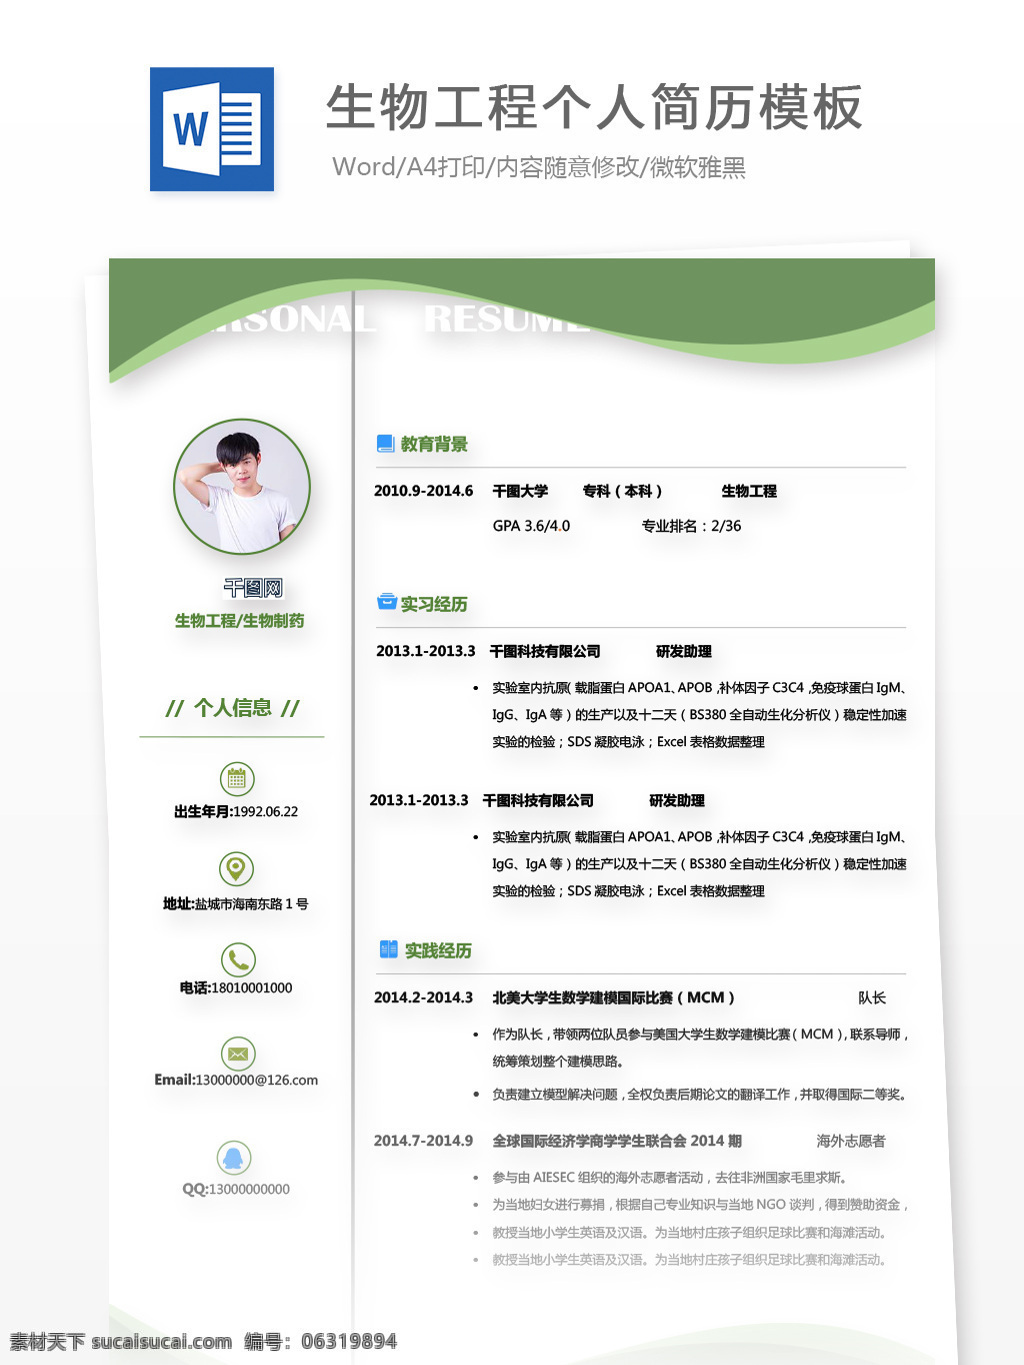 吴浩 宇 生物工程 生物制药 个人简历 模板 简历 简历模板 绿色 简约 个人简历模板 35年 化工